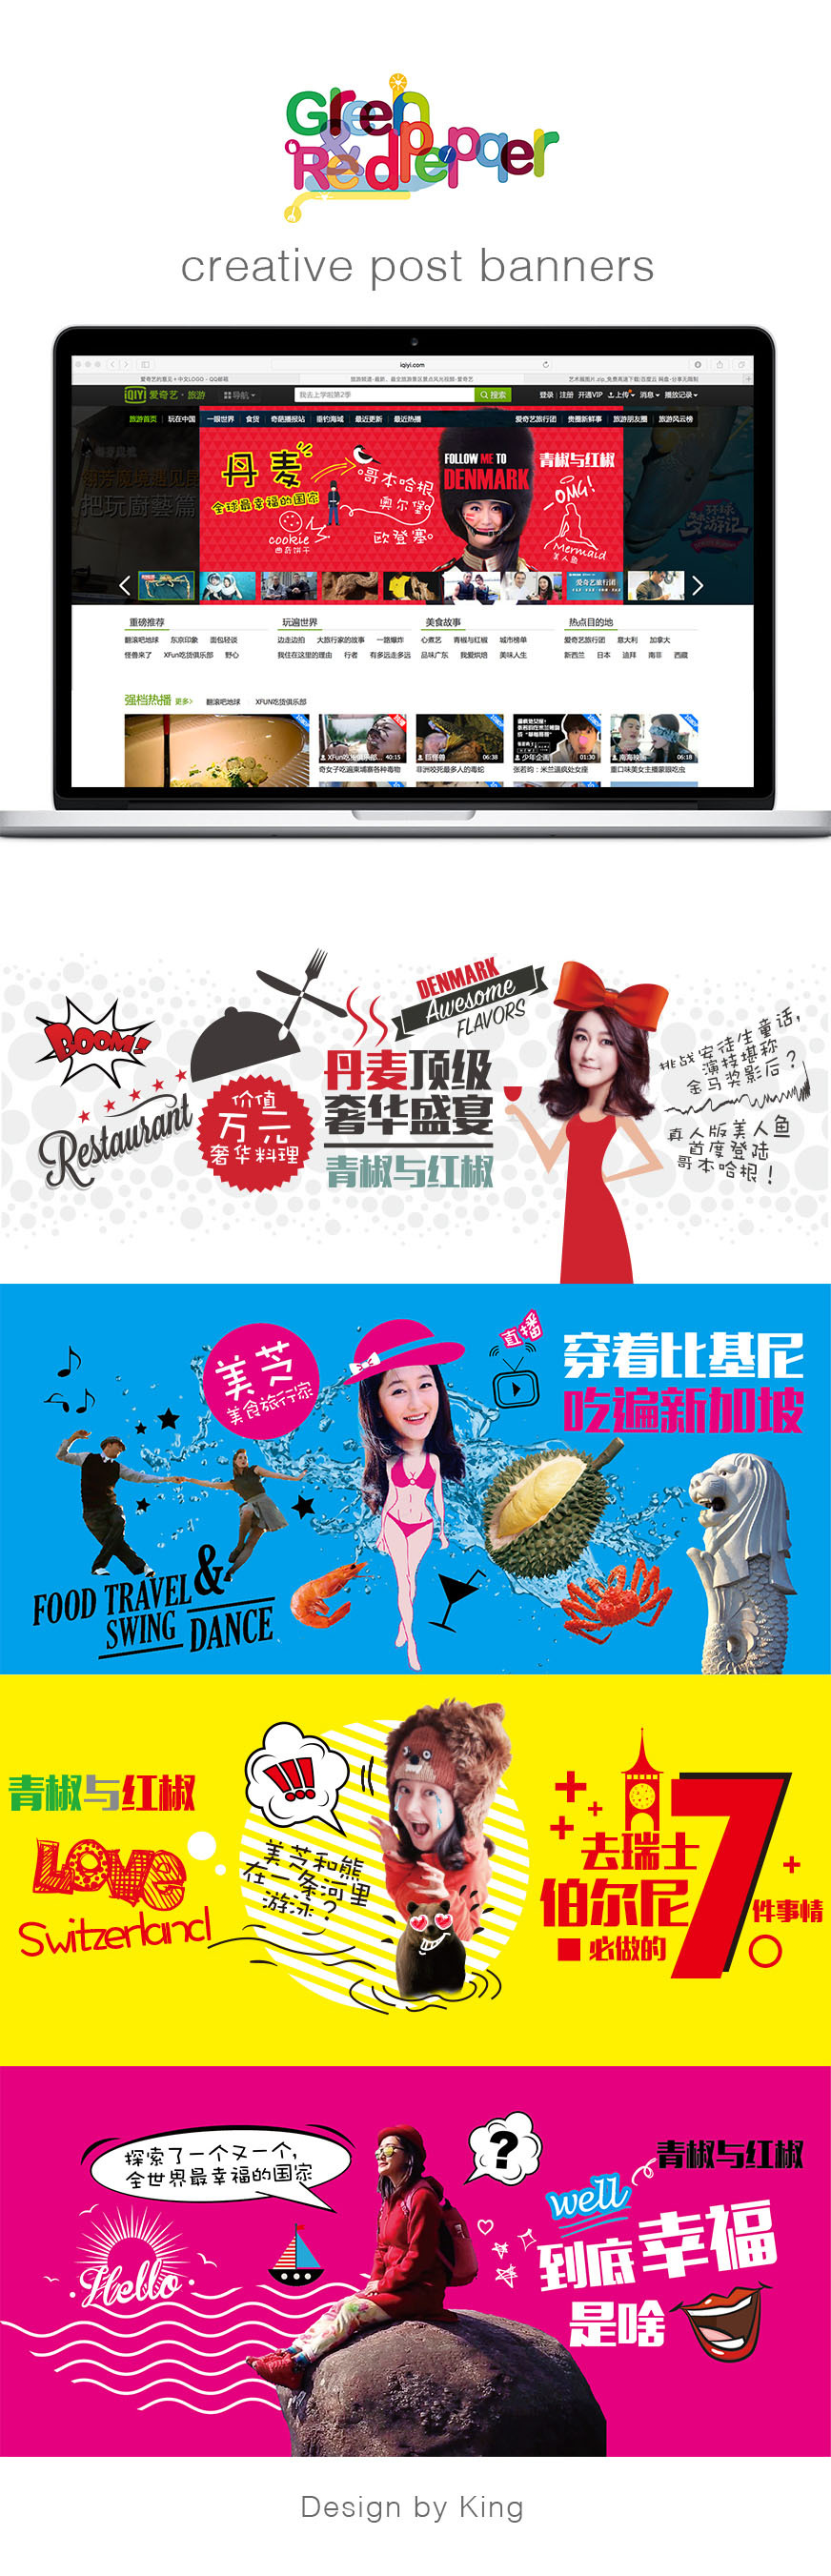 青椒与红椒美食旅游节目广告投放网站banner图0